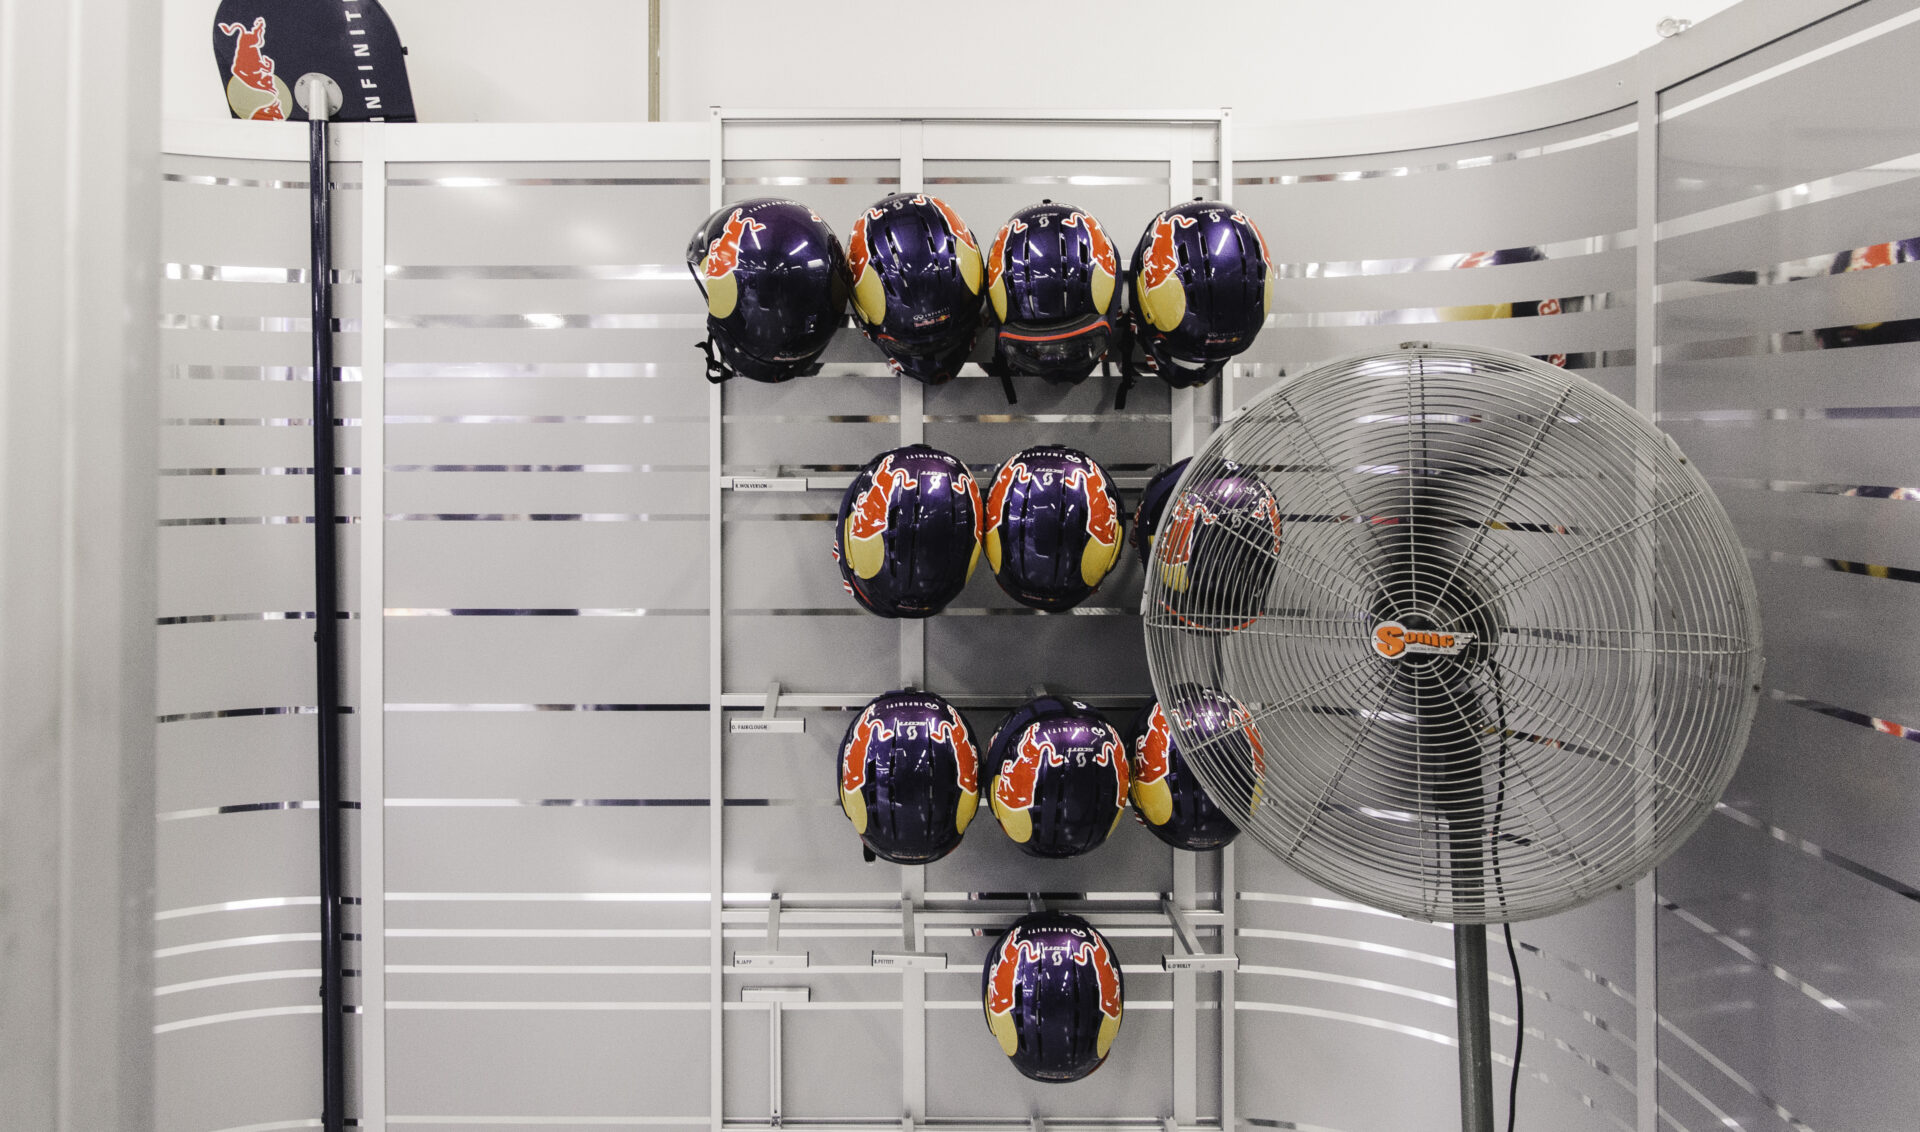 Redbull F1 Garage helmets